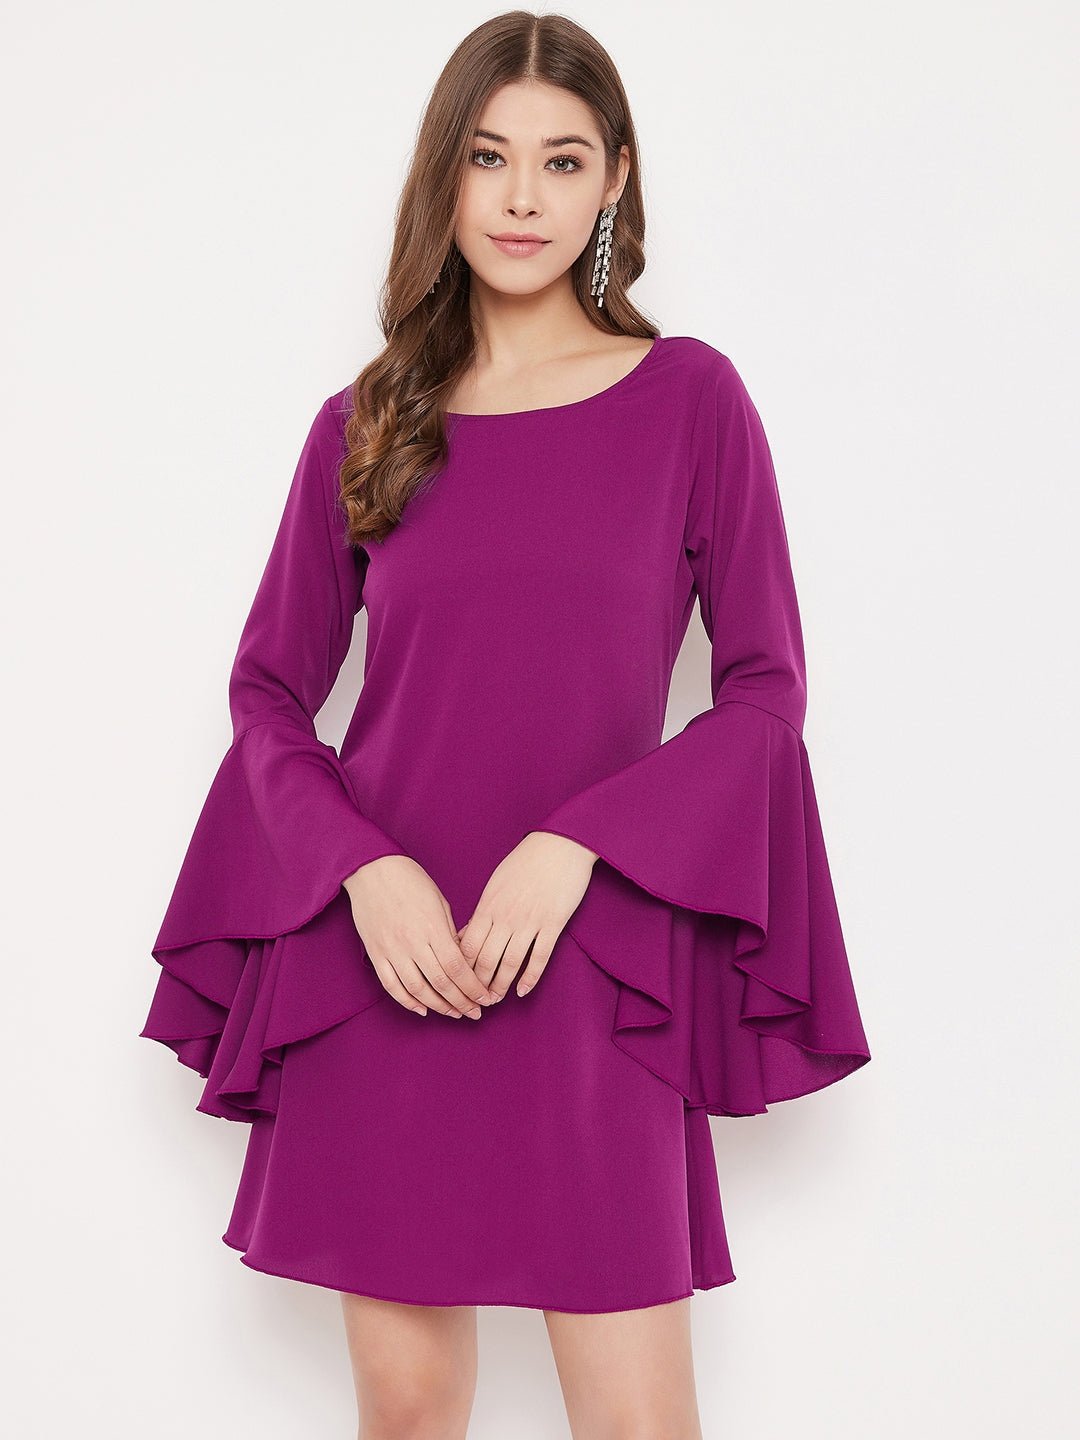 Folk Republic Women Solid Purple Bell Sleeves A-Line Mini Dress - #folk republic#